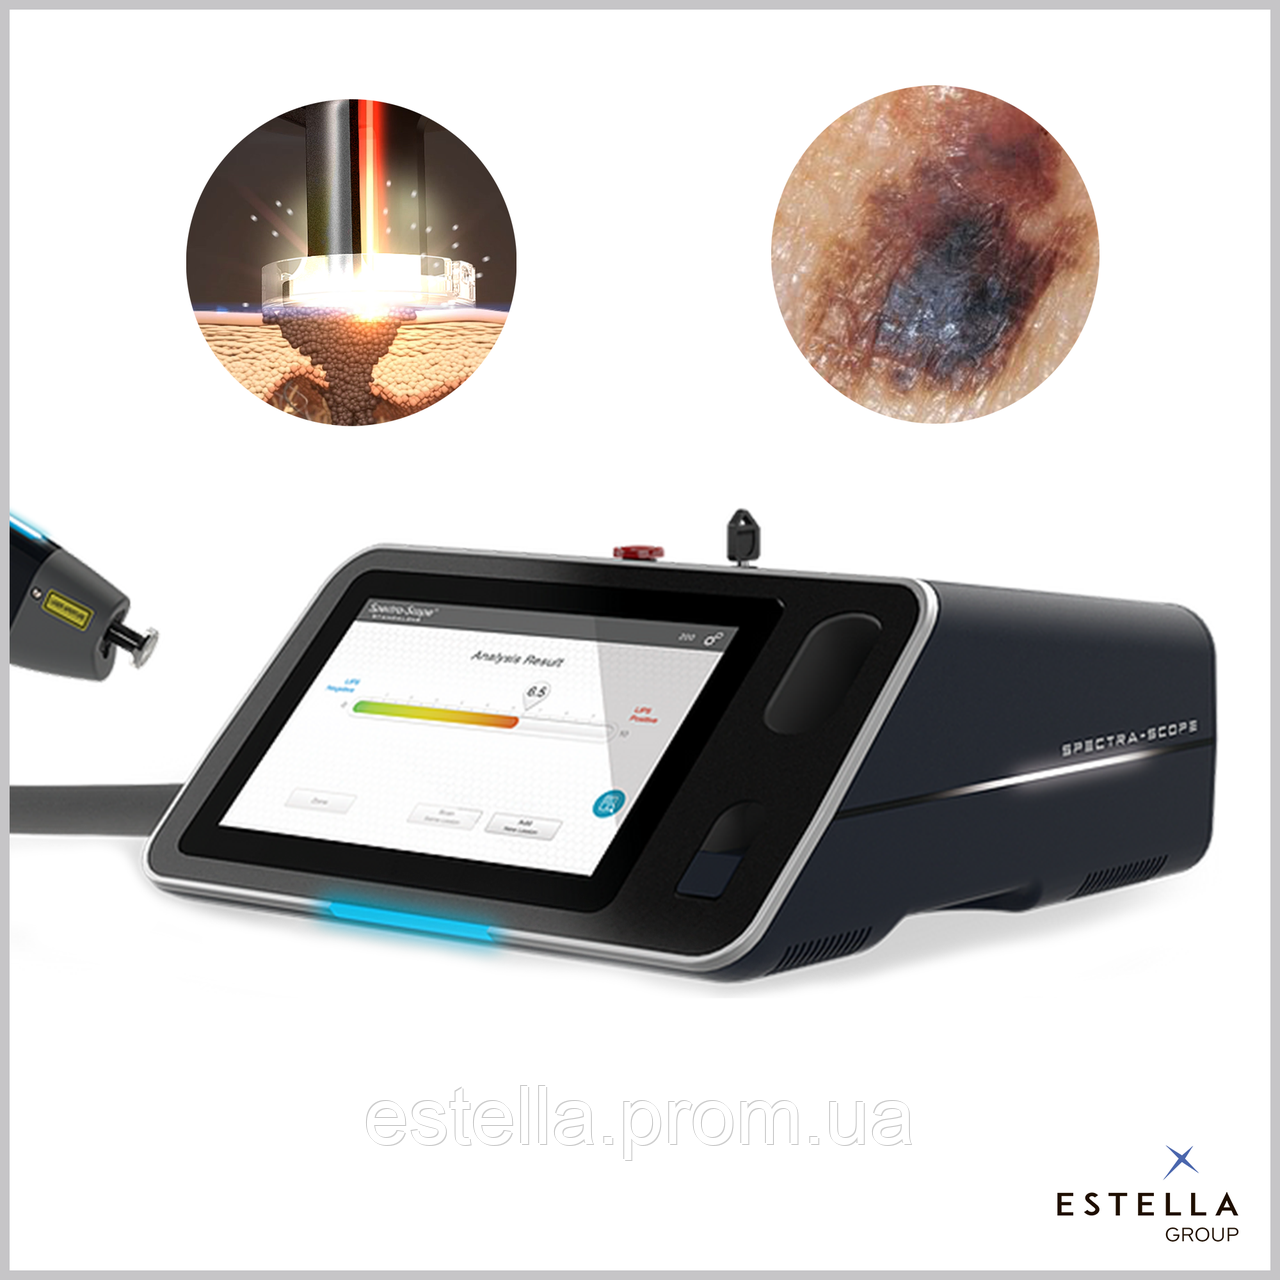 Spectra-Scope® - пристрій для діагностики раку шкіри, США